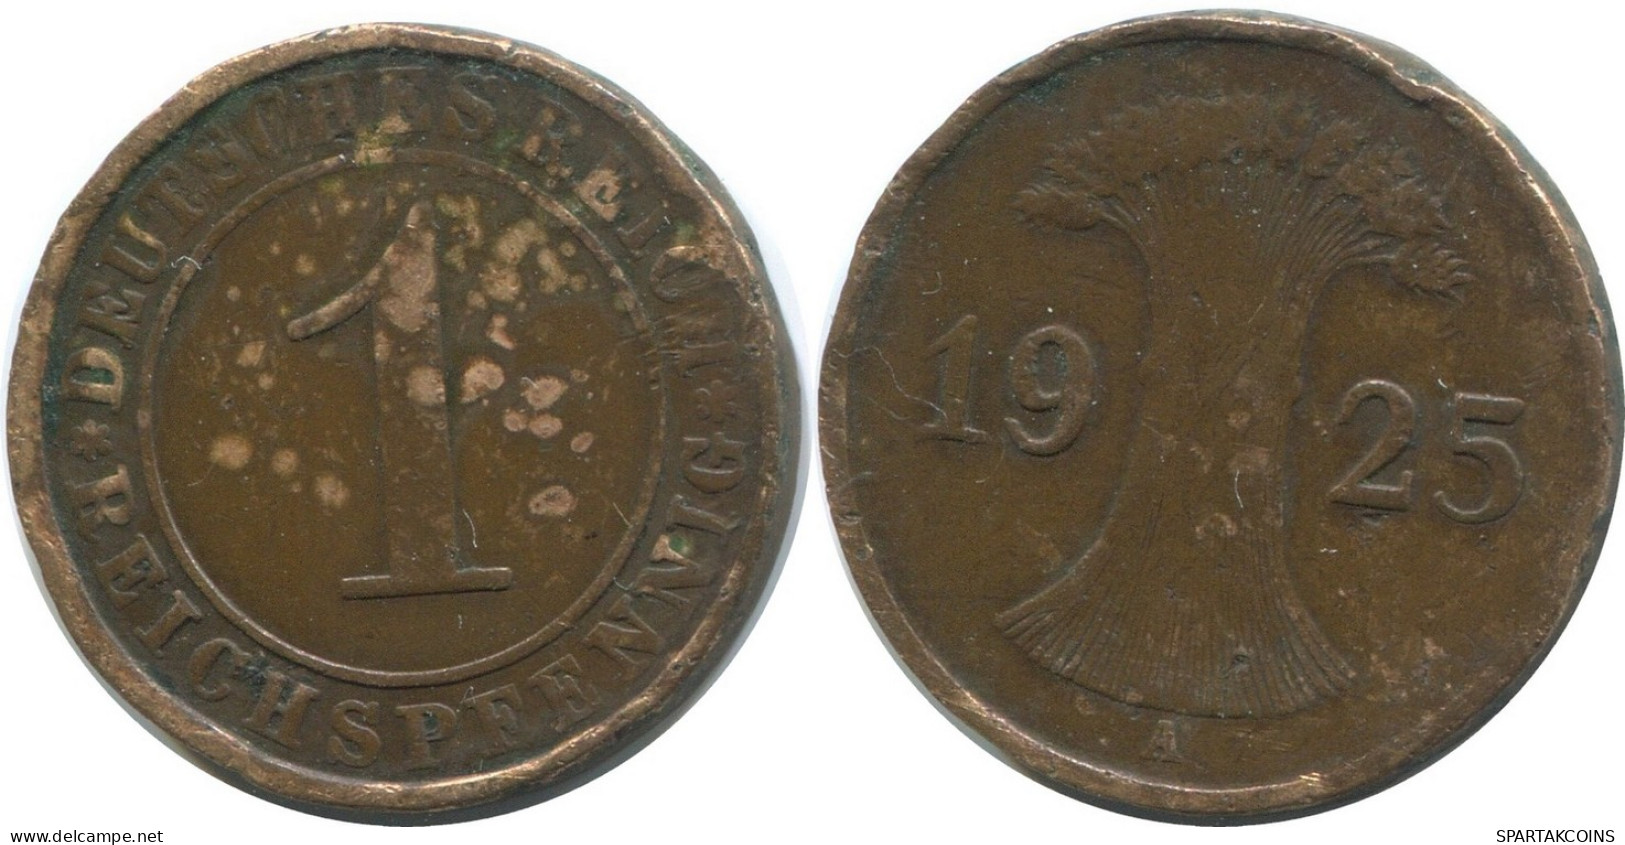 1 REICHSPFENNIG 1925 A GERMANY Coin #AD434.9.U - 1 Rentenpfennig & 1 Reichspfennig